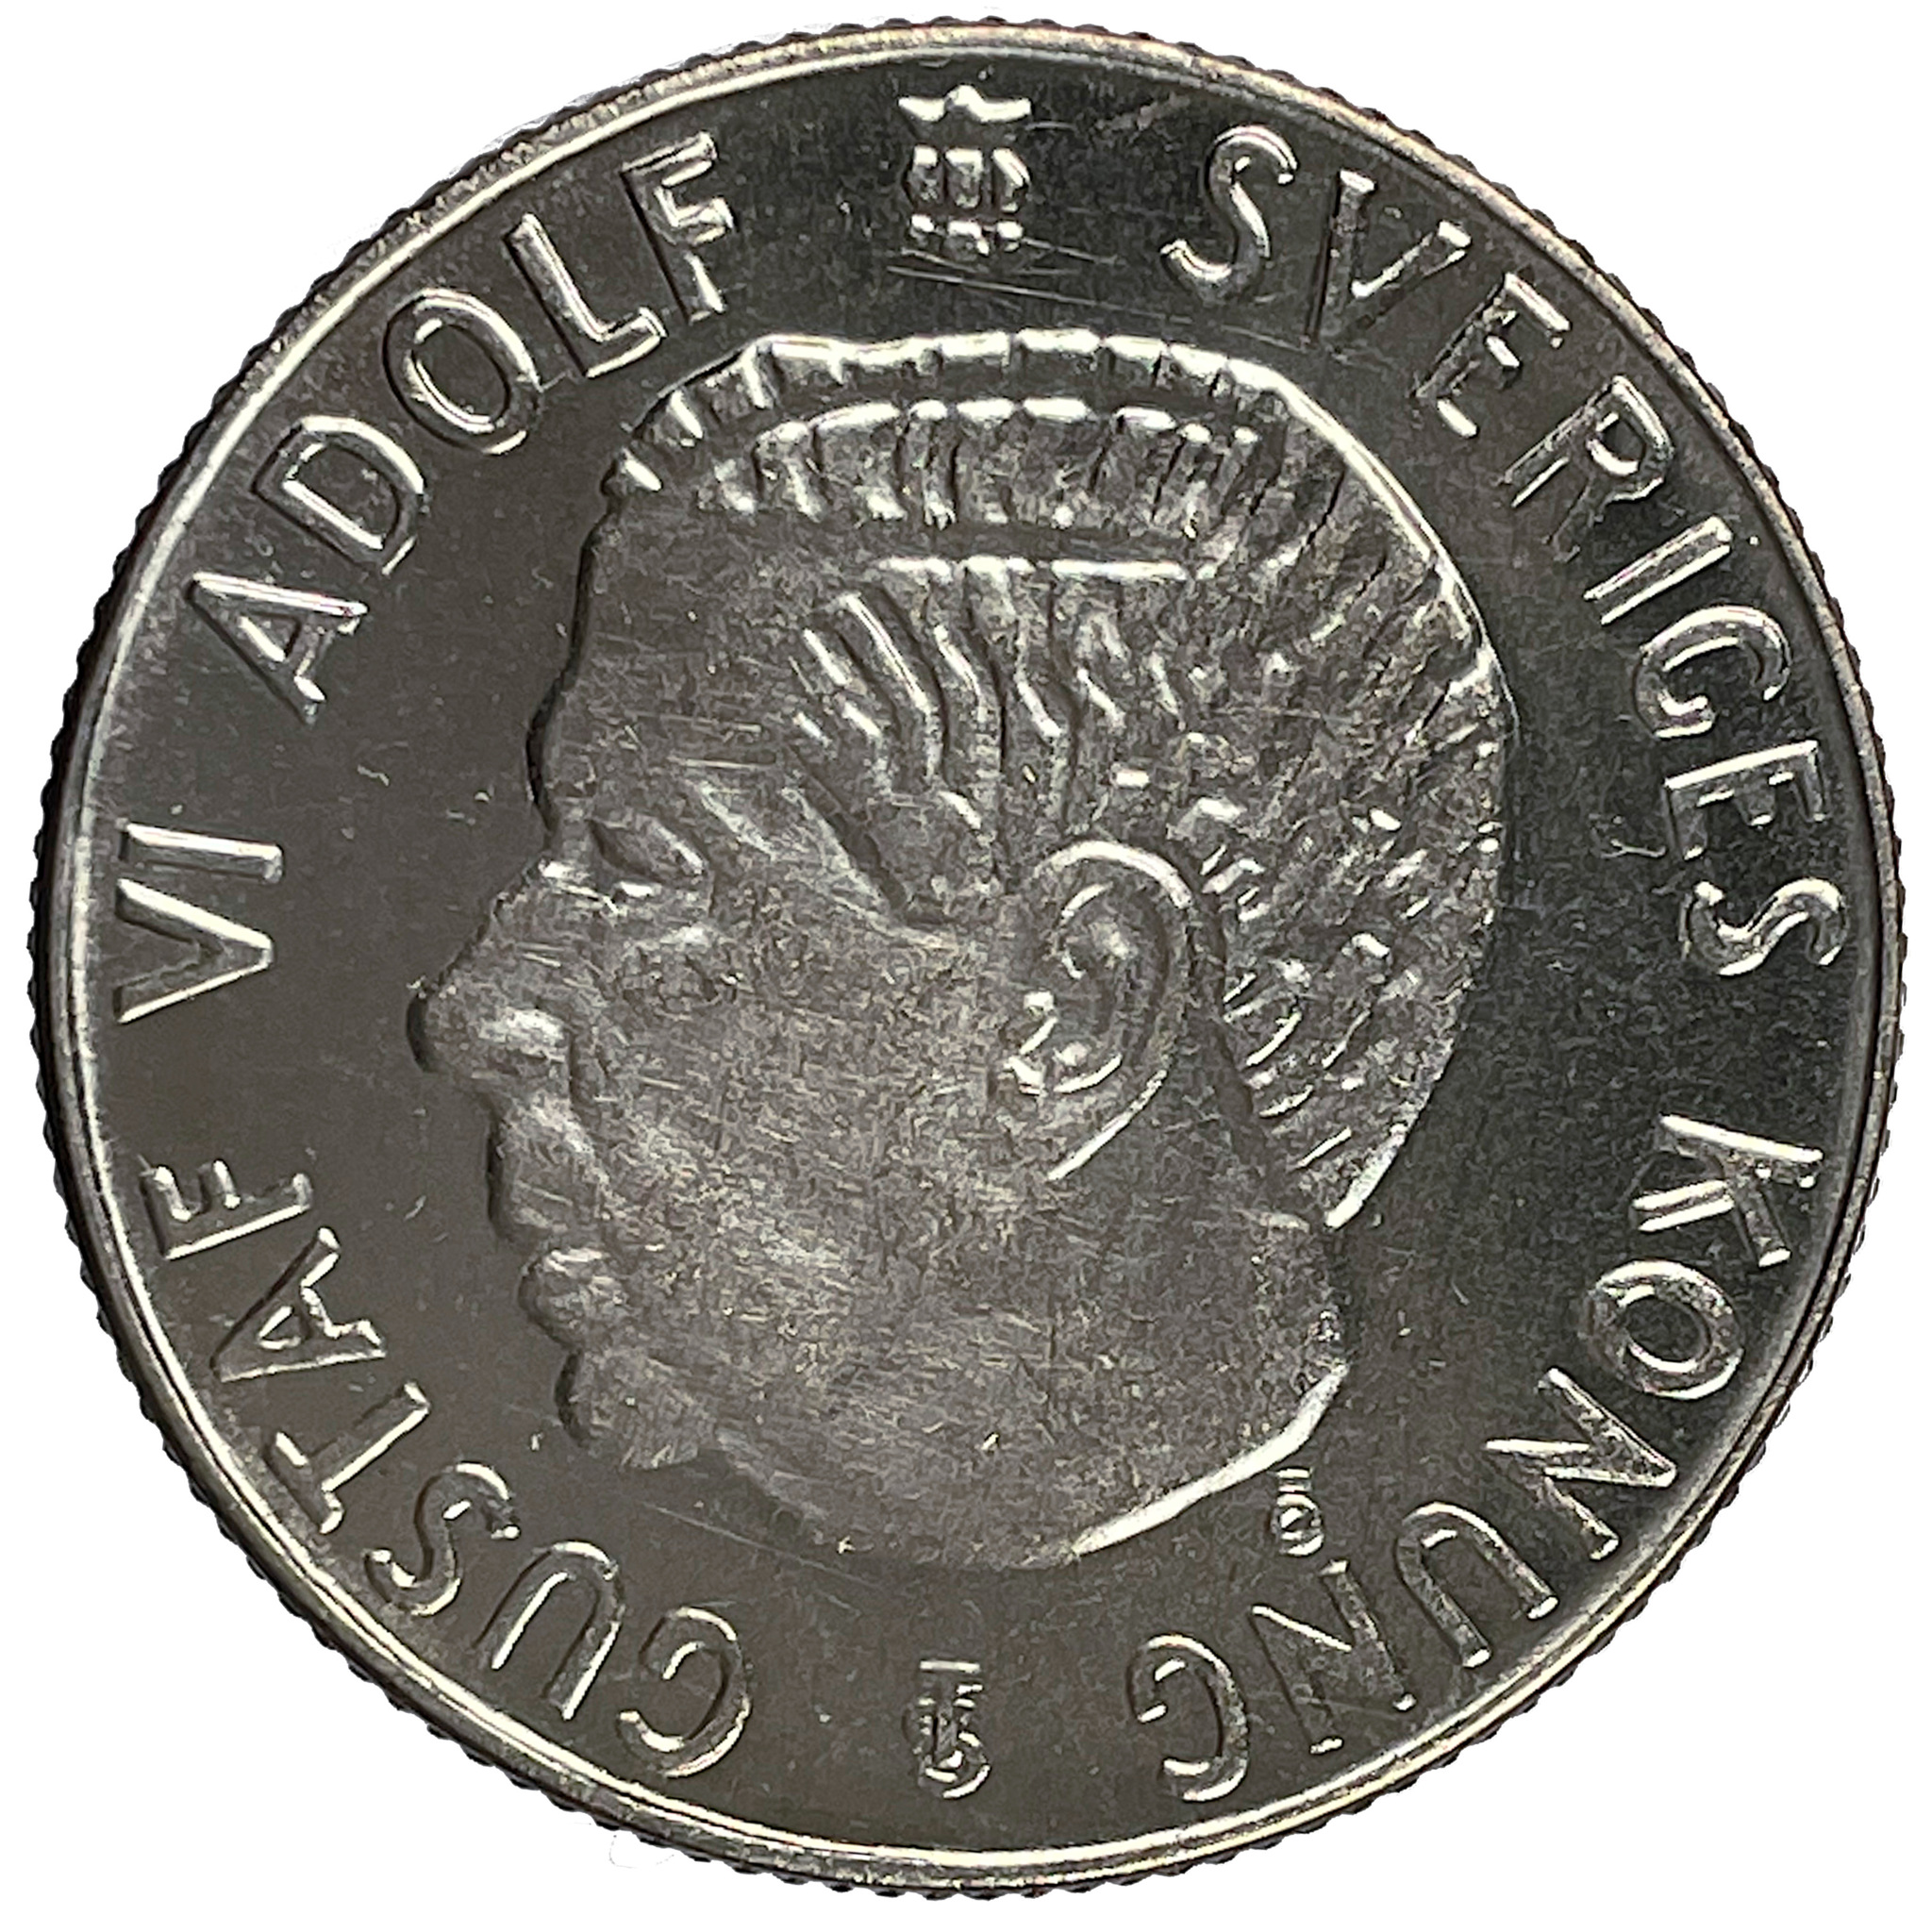 Gustav VI Adolf, 1 Krona 1959 - Djup spegelkaraktär